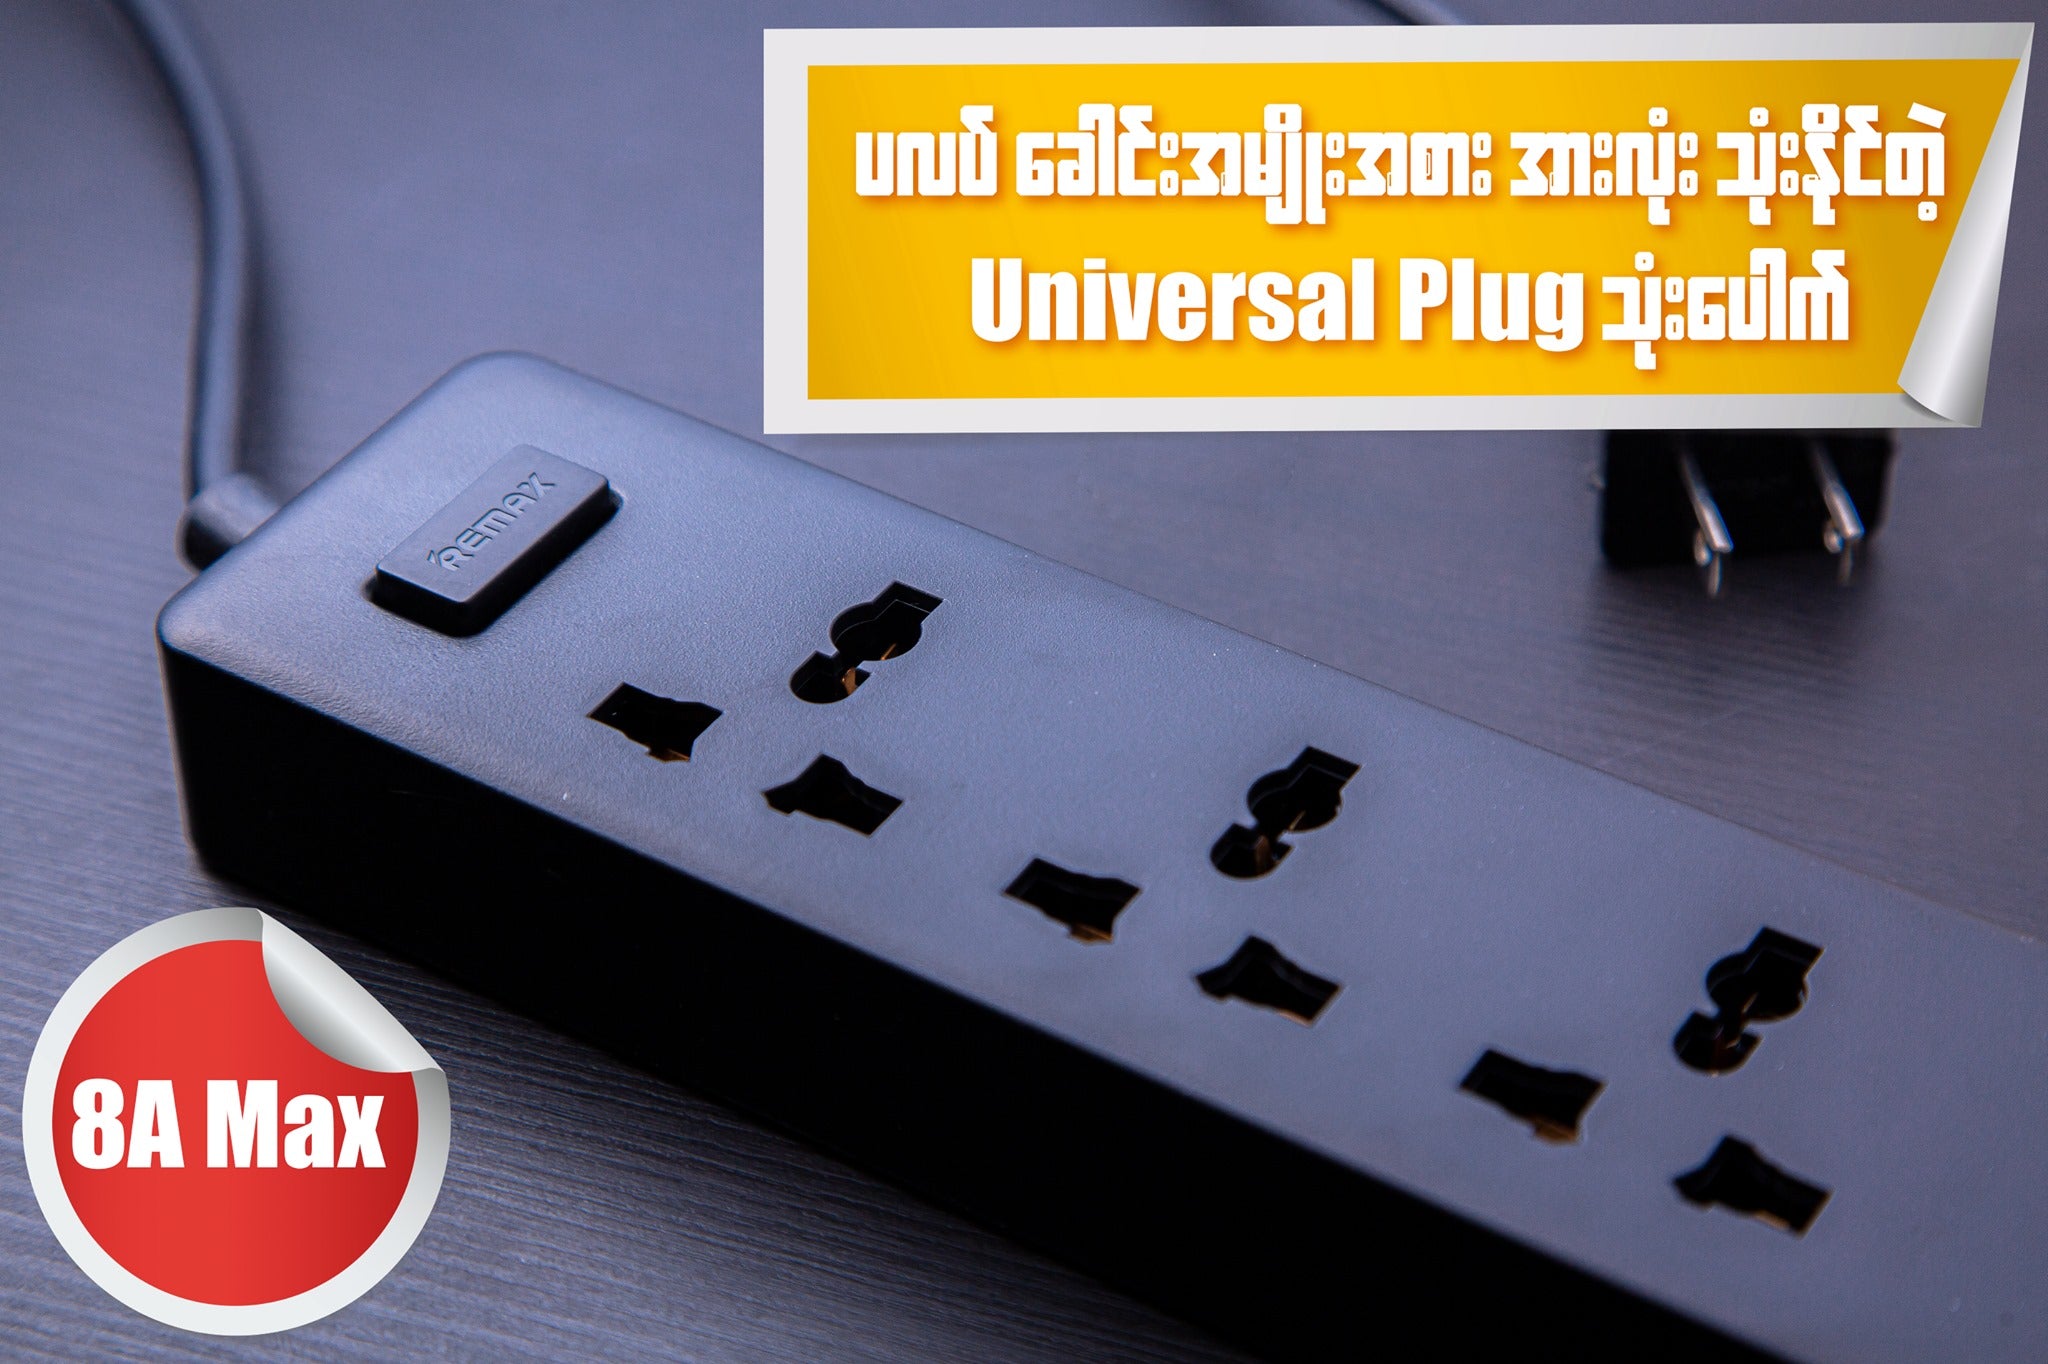 REMAX RU-S2 Regleta Enchufe Múltiples para Electricidad y USB, Ladrón –  HOME UNIVERSAL